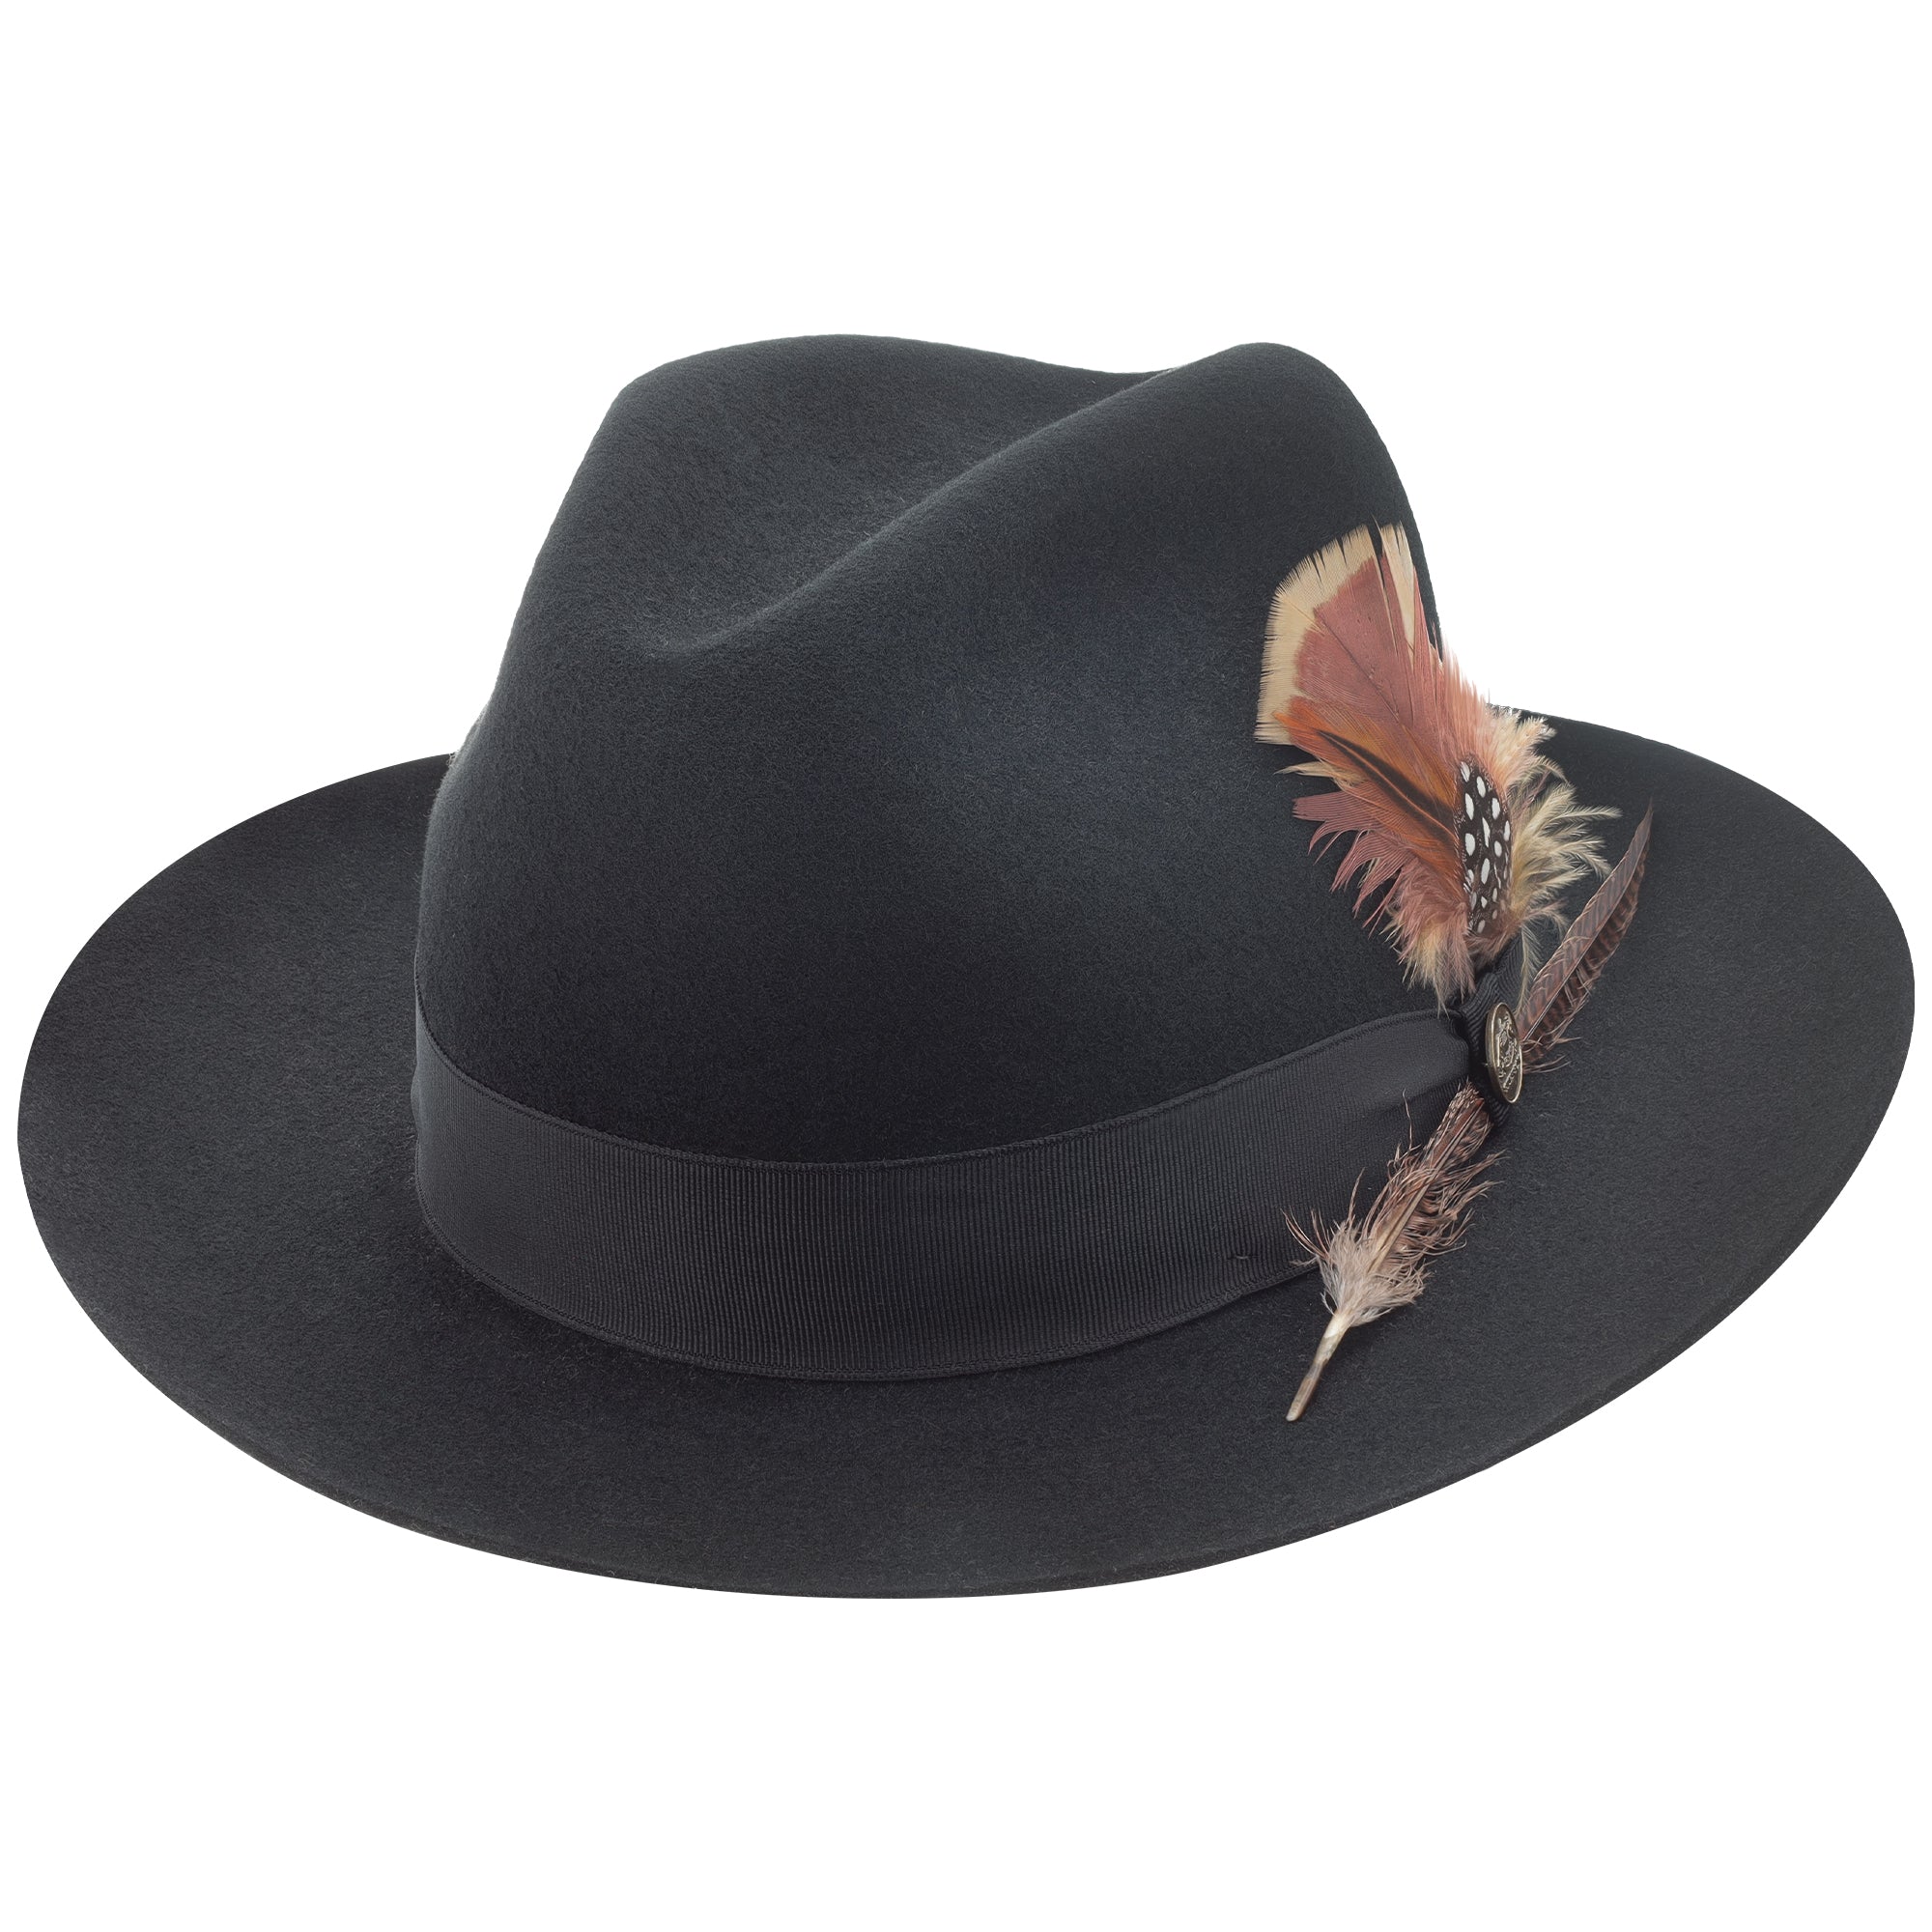 Stetson Feather Trim Toyo Western Straw Hat Women/Men 